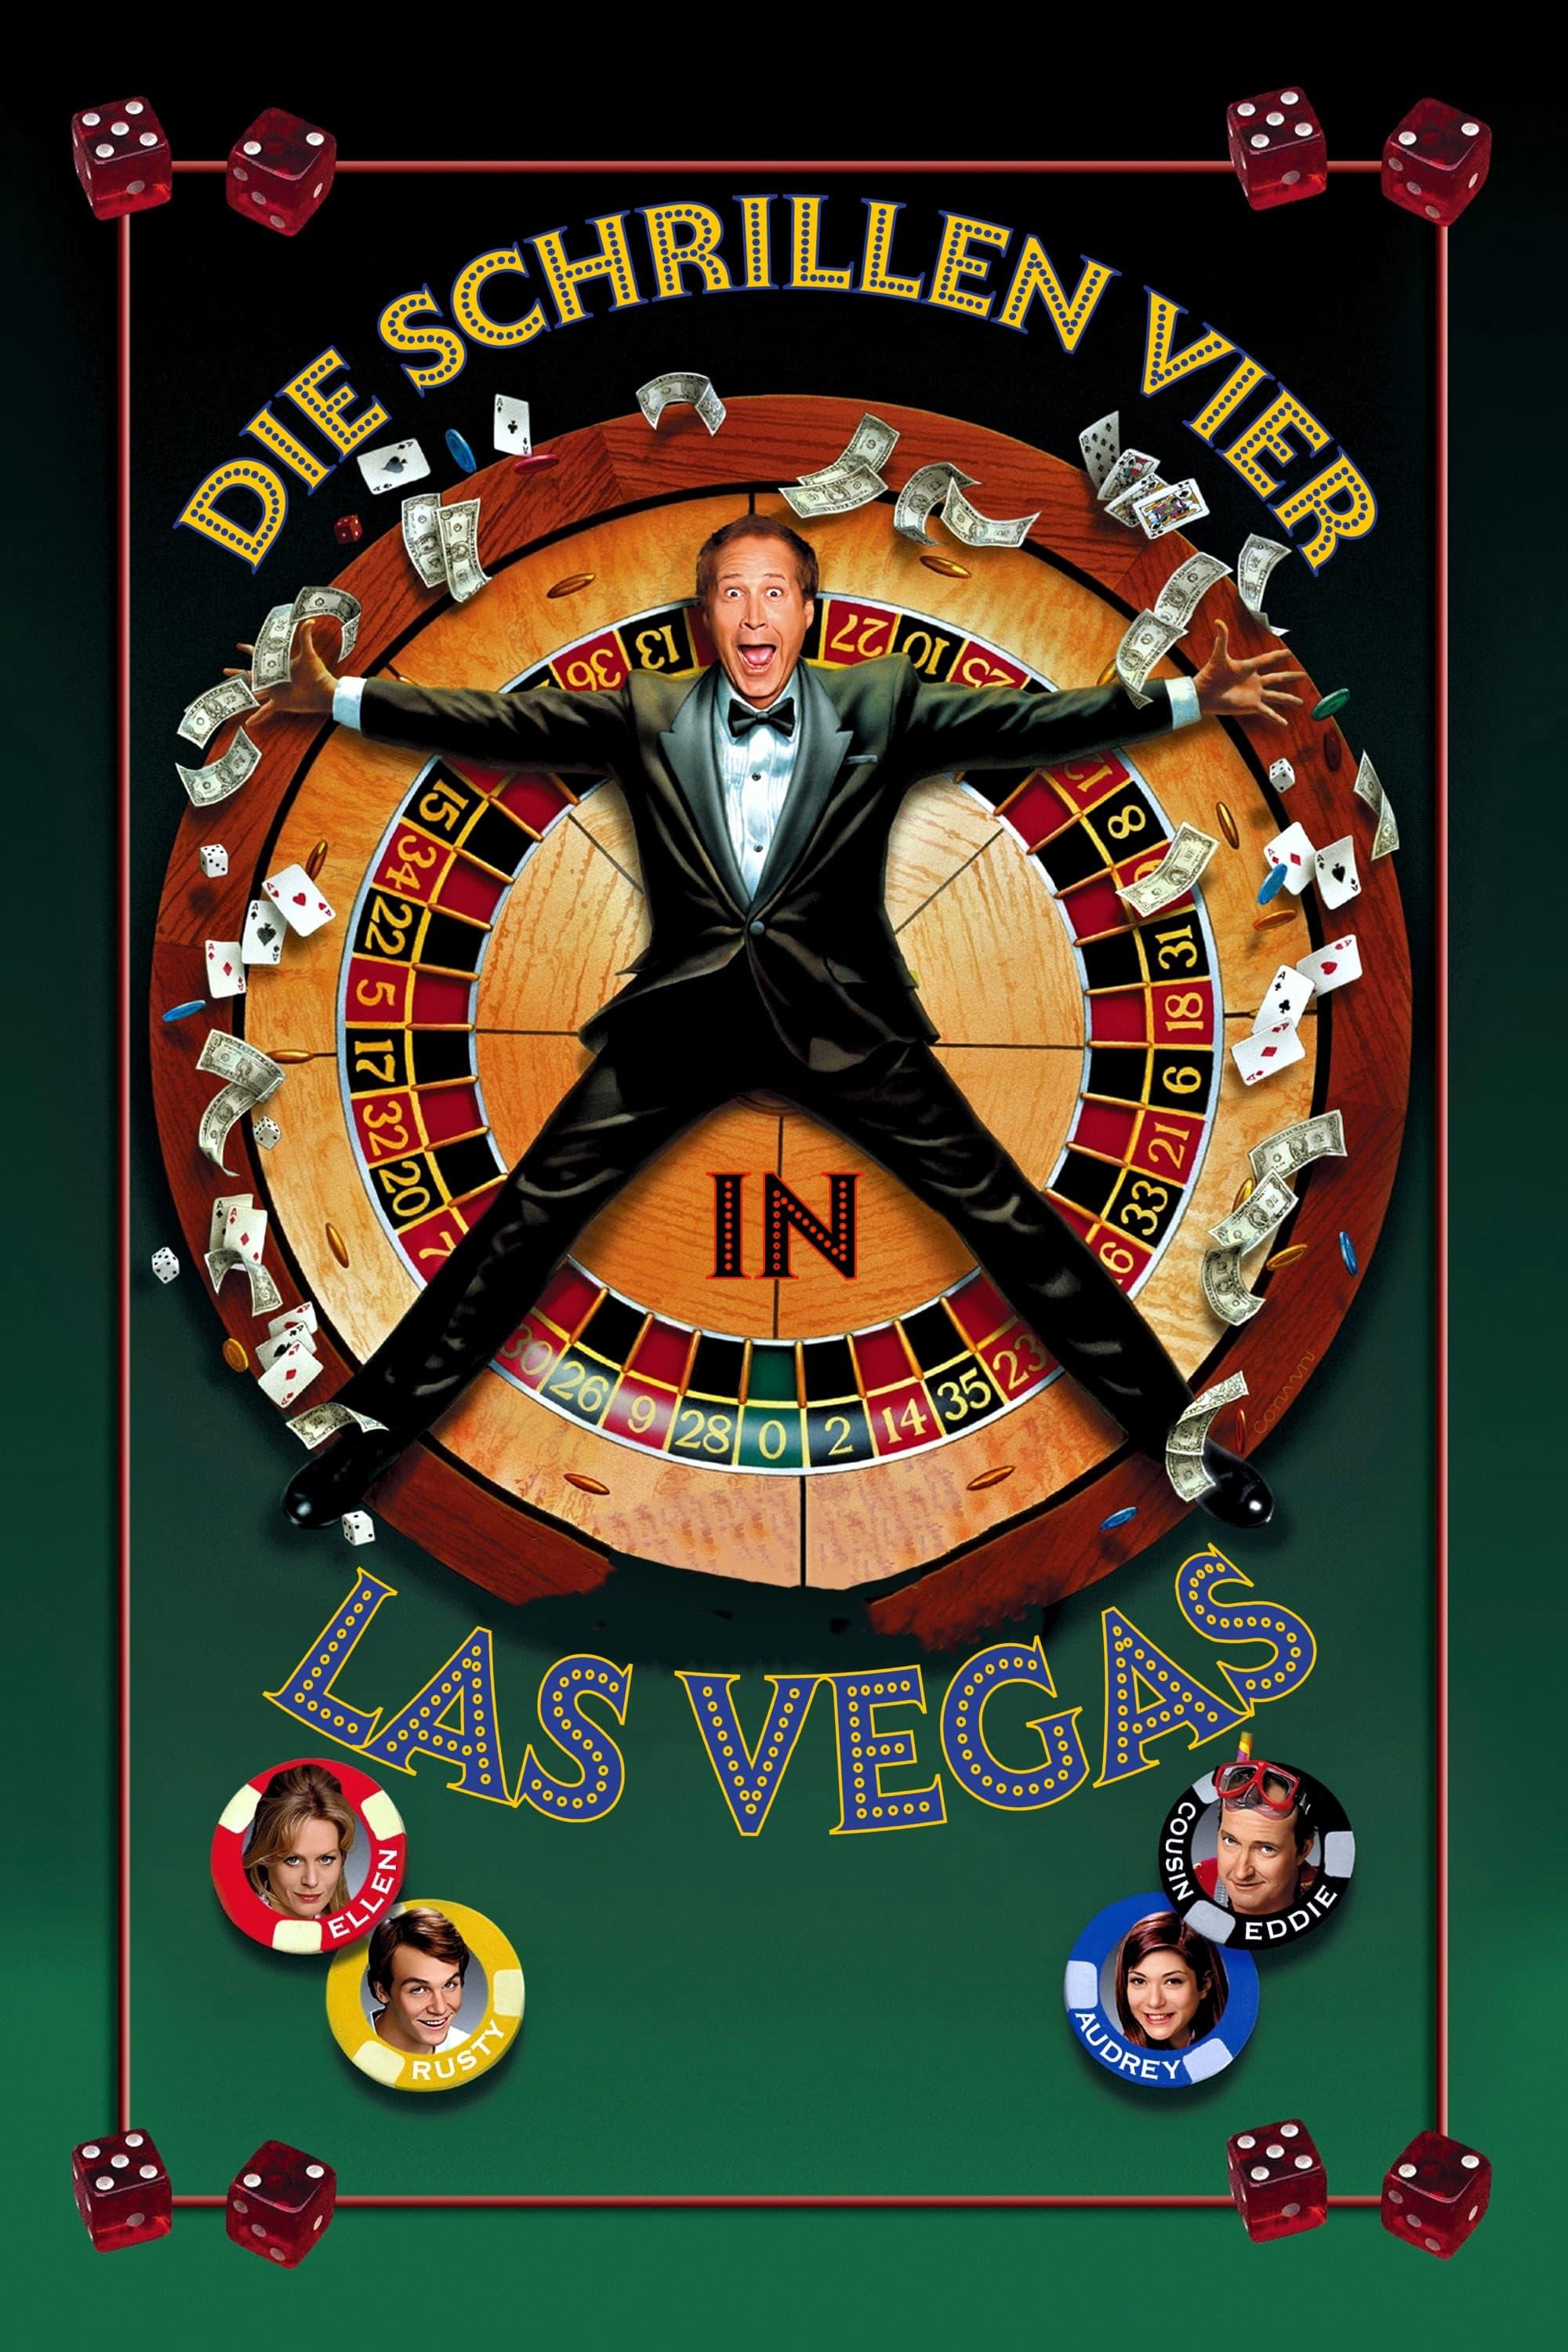 Die schrillen Vier in Las Vegas poster